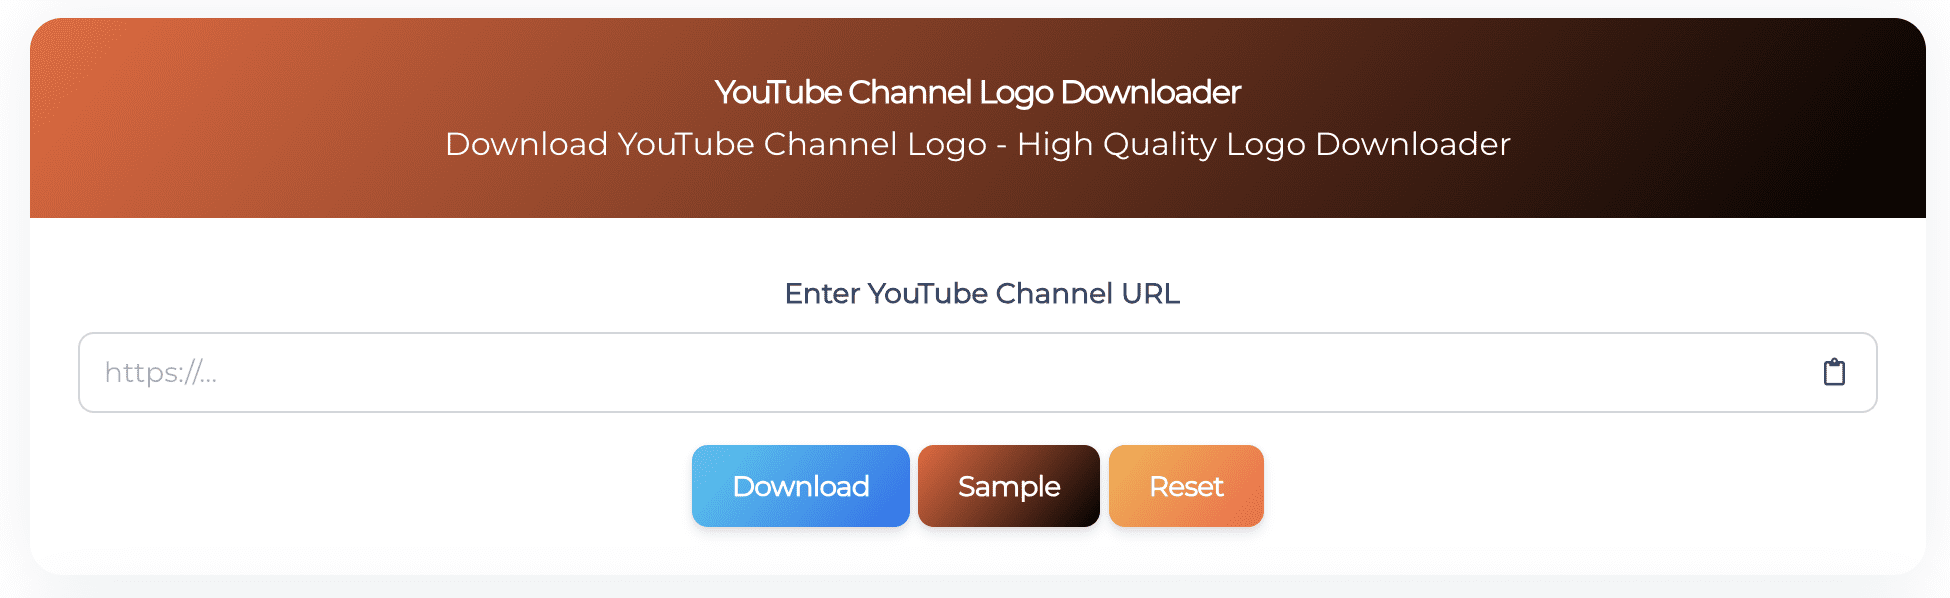 YouTube Channel Logo Downloader